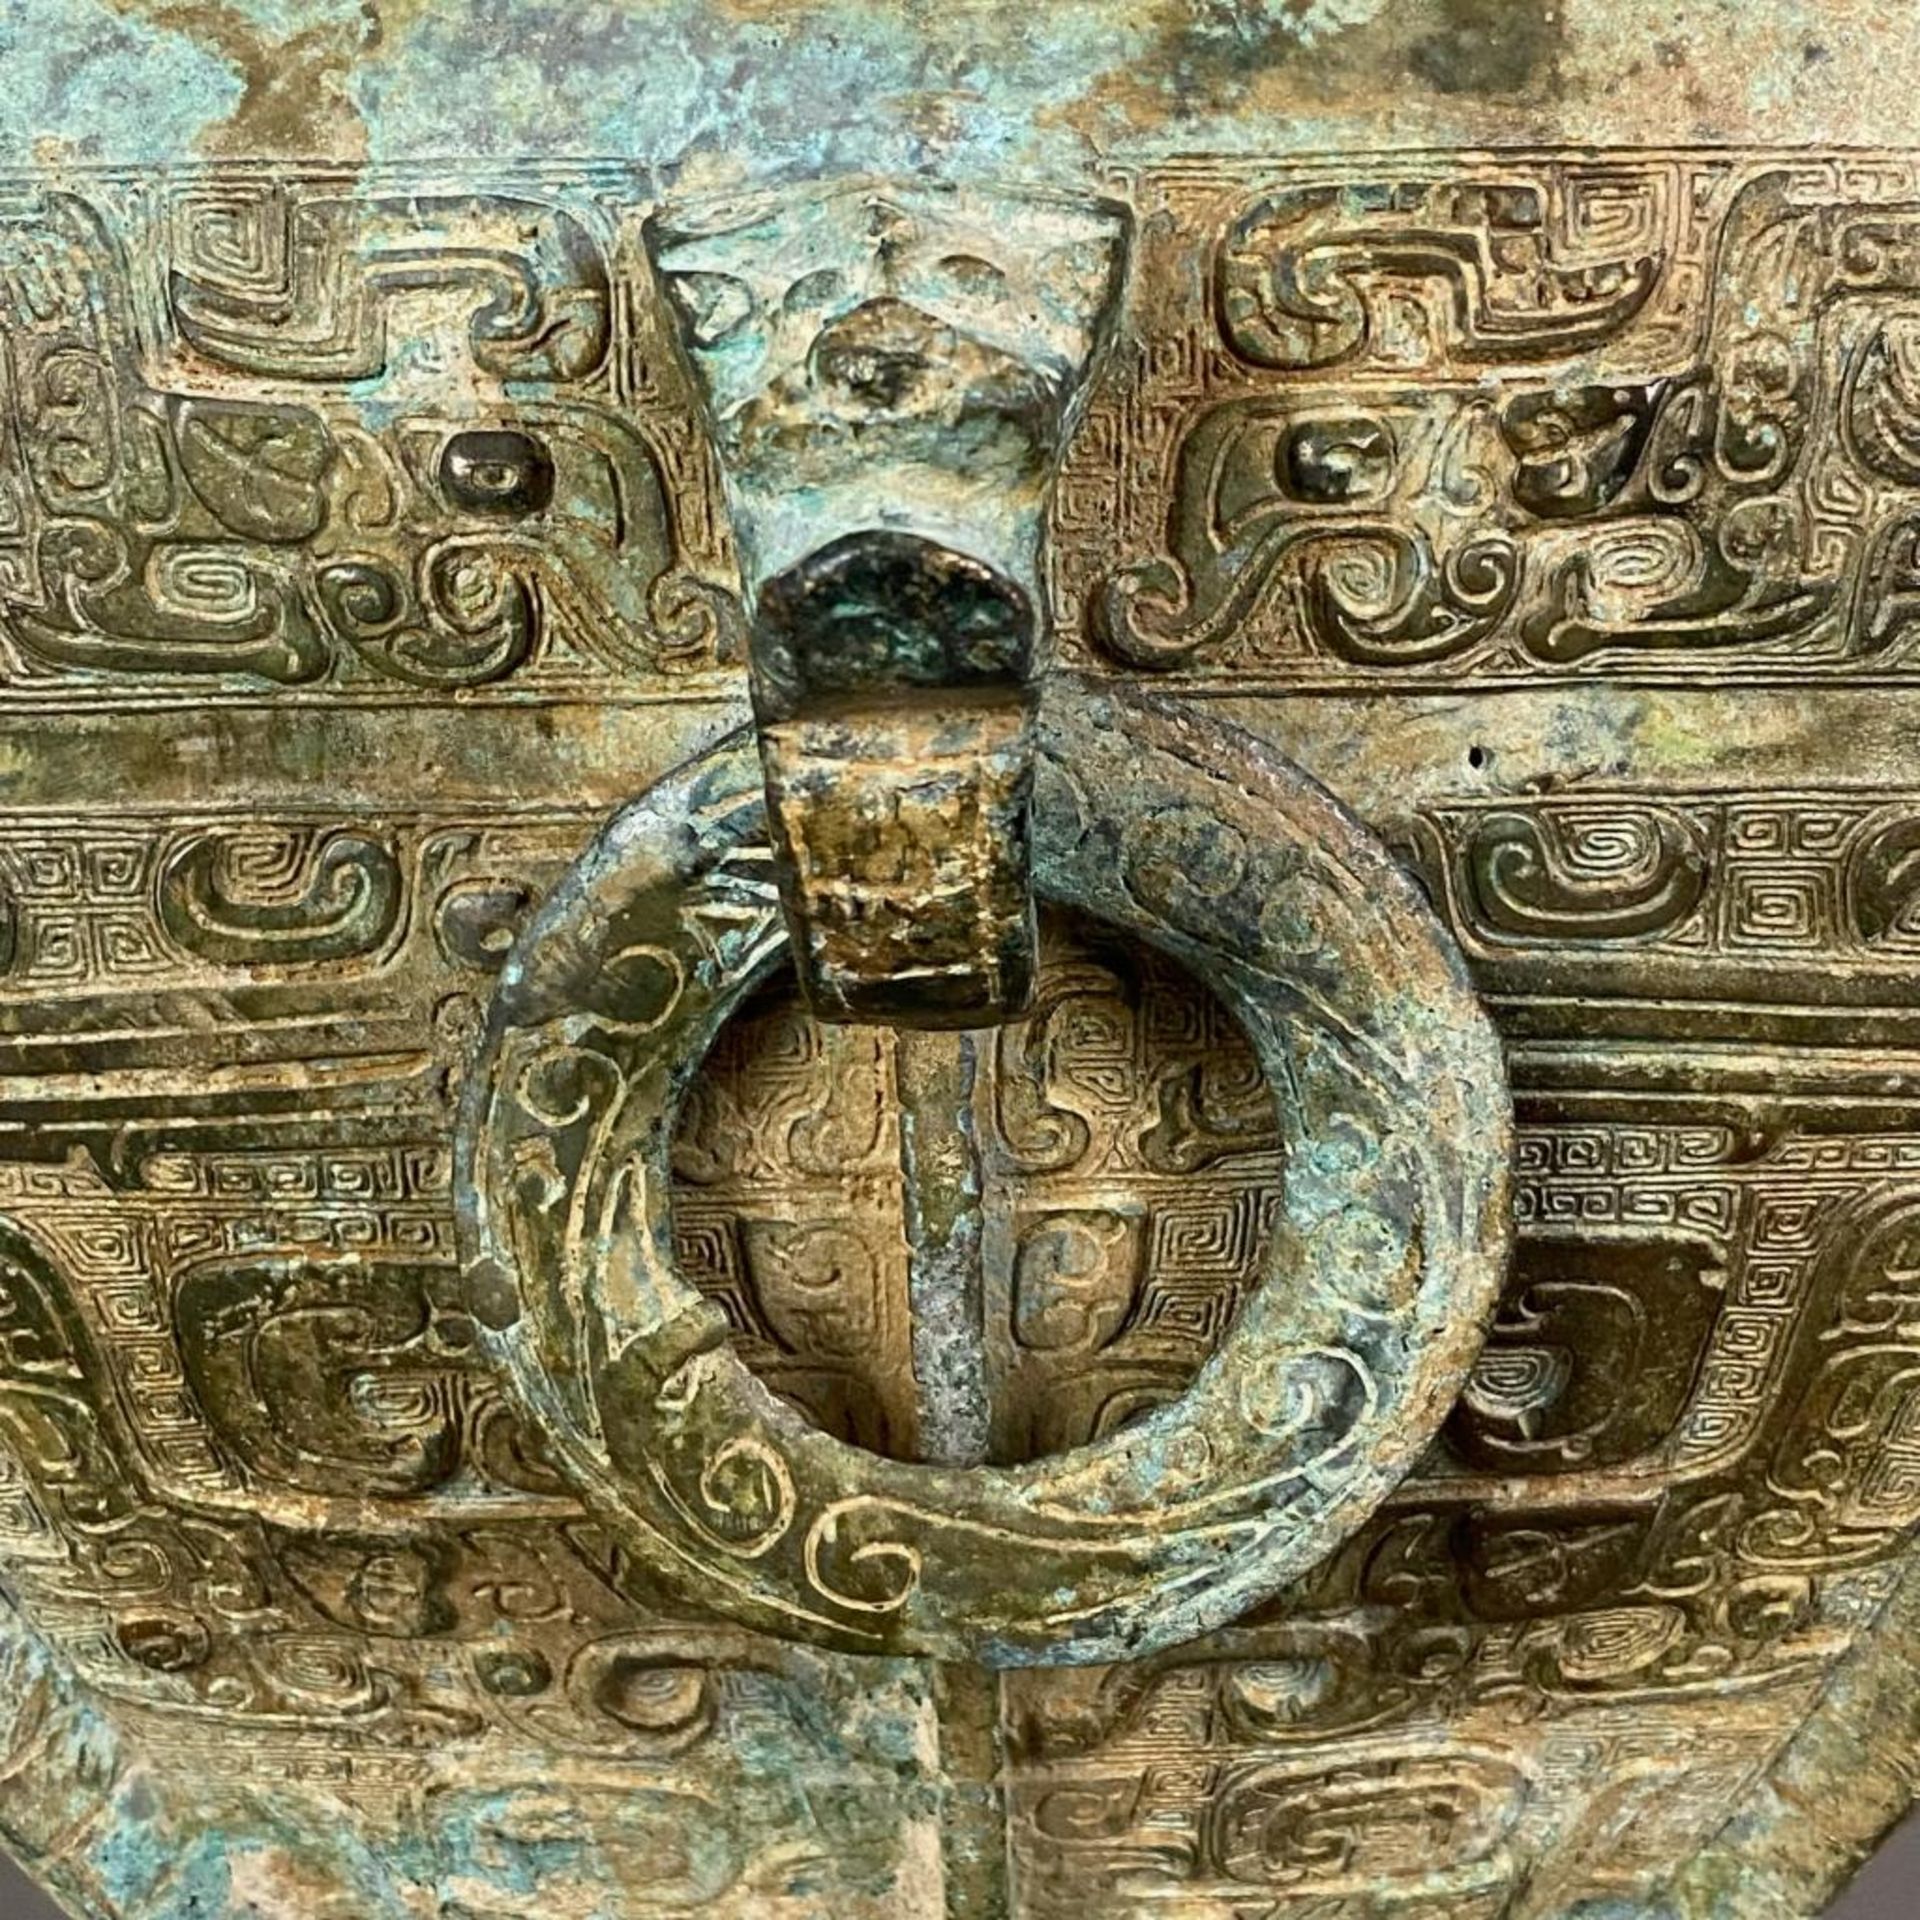 Fanghu-Vase im archaischen Stil - China, grün-braun patinierte Bronze, vierkantige gebauchte Form a - Bild 7 aus 10